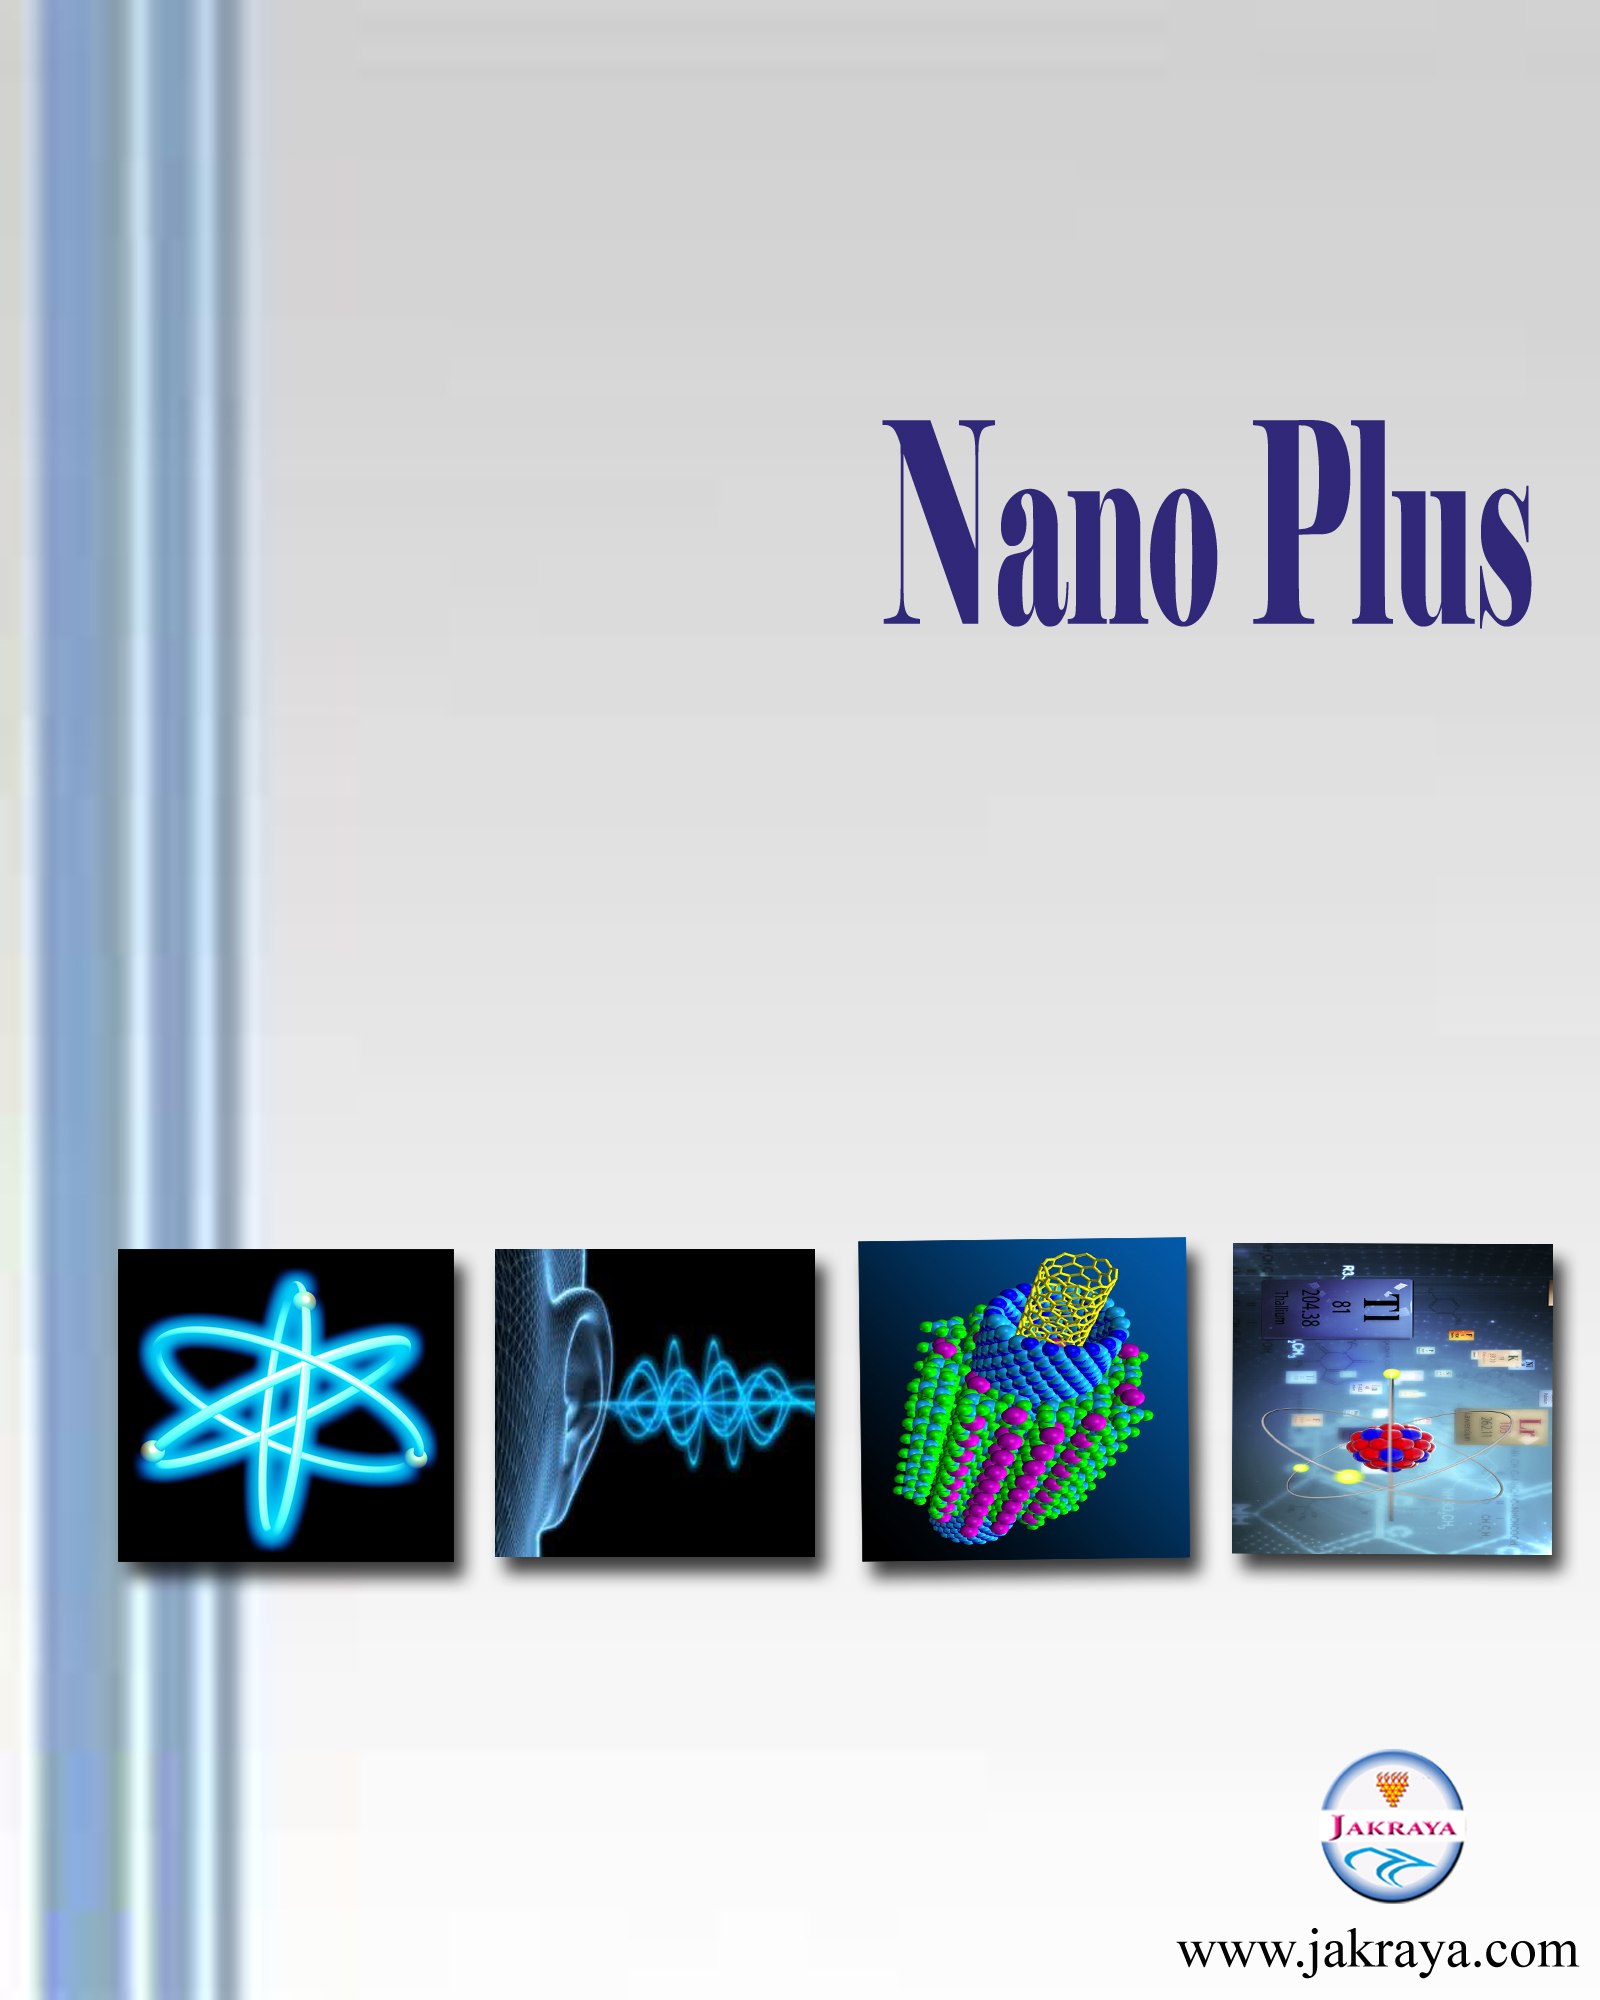 Nano Plus